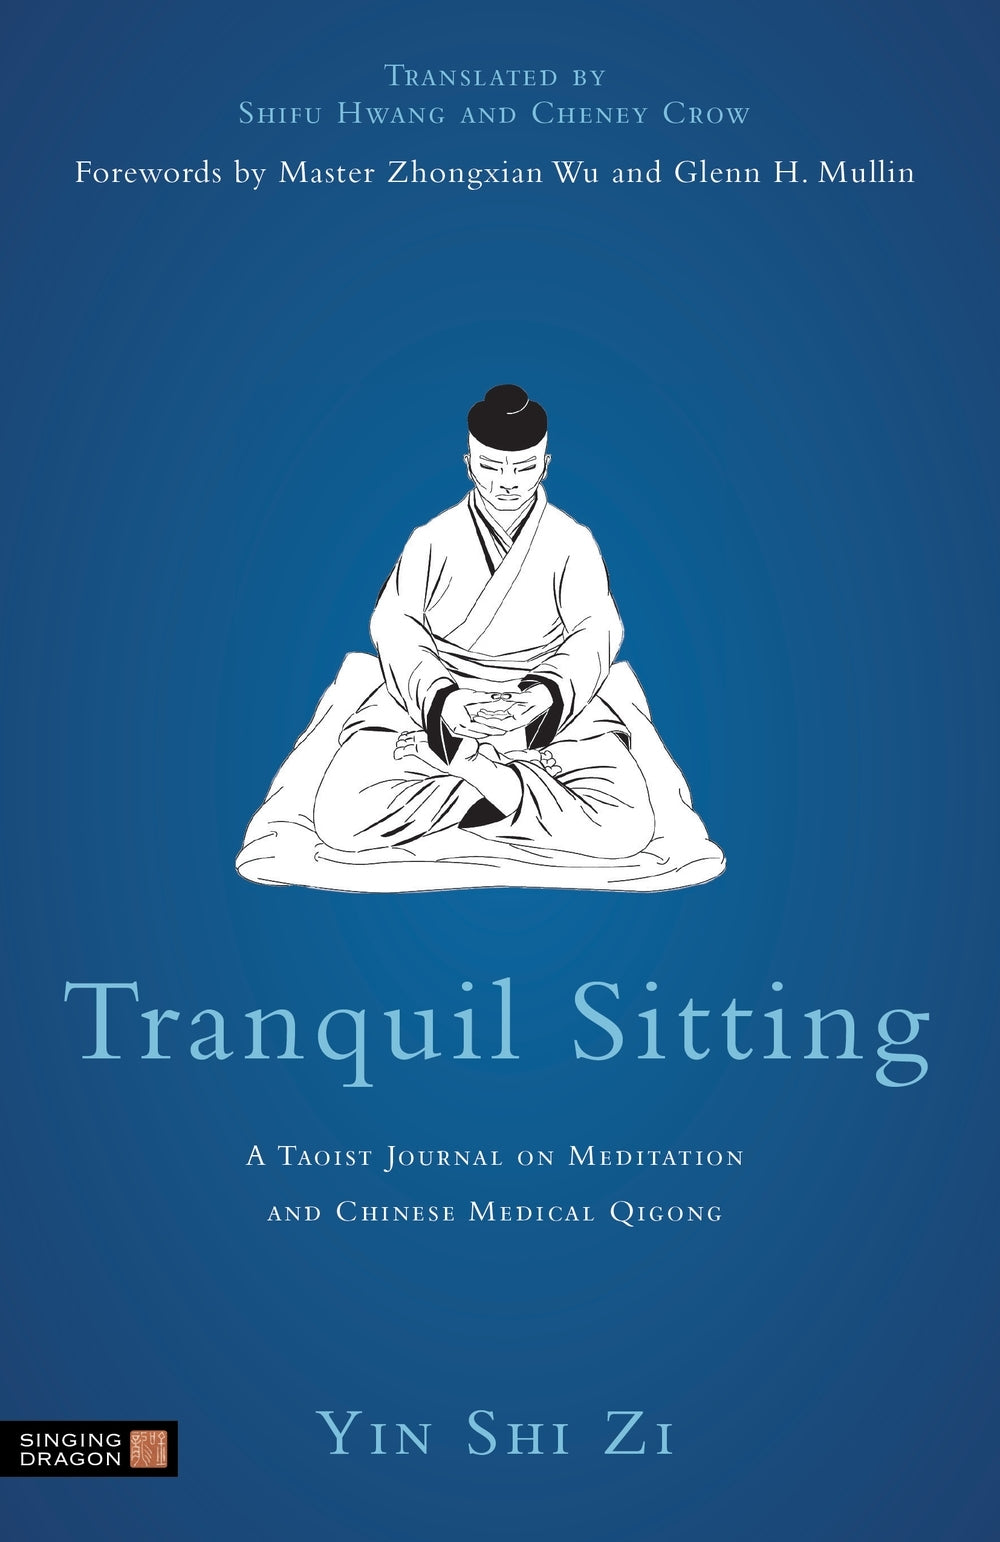 Tranquil Sitting by Yin Shih Tzu, Zhongxian Wu, Glenn H. Mullin